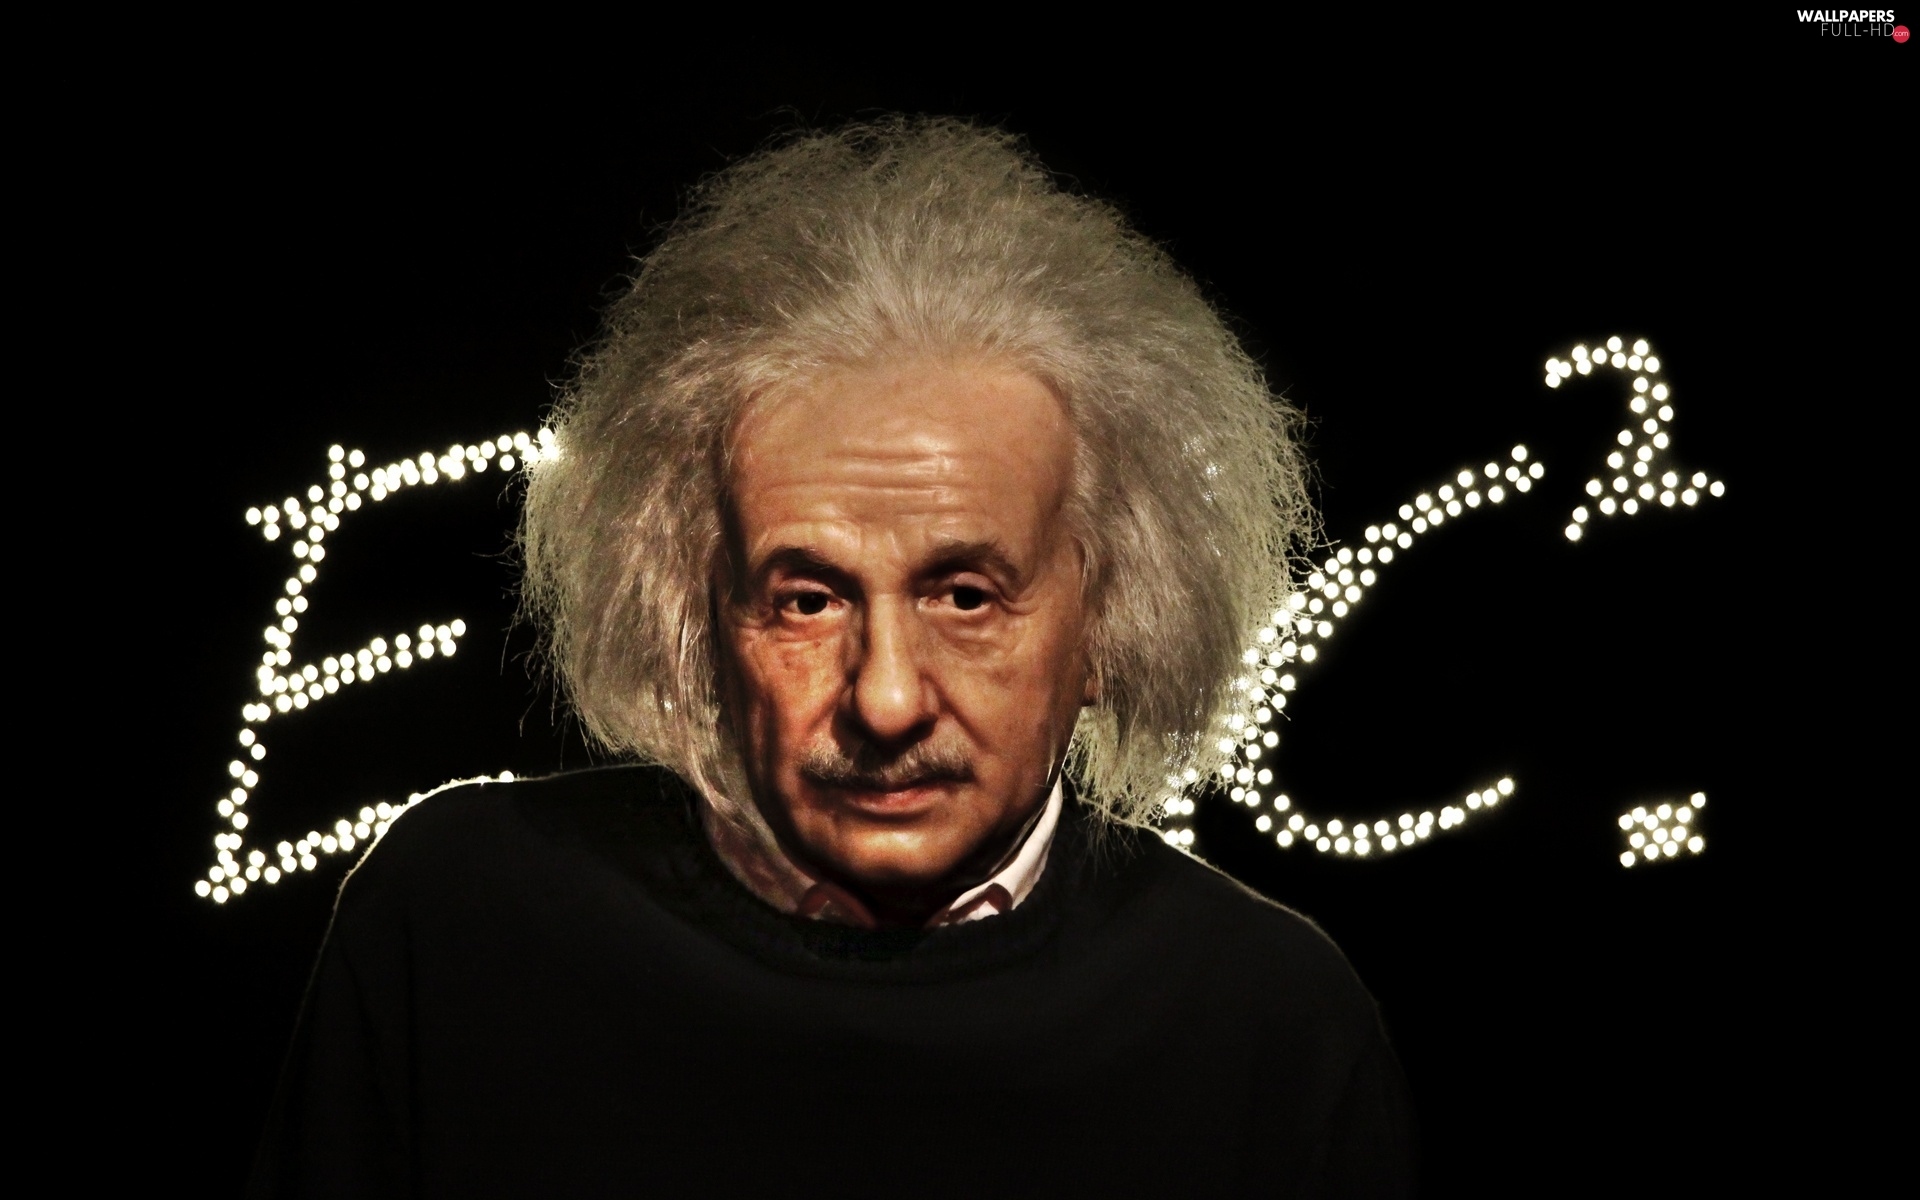 Albert Einstein Wallpapers